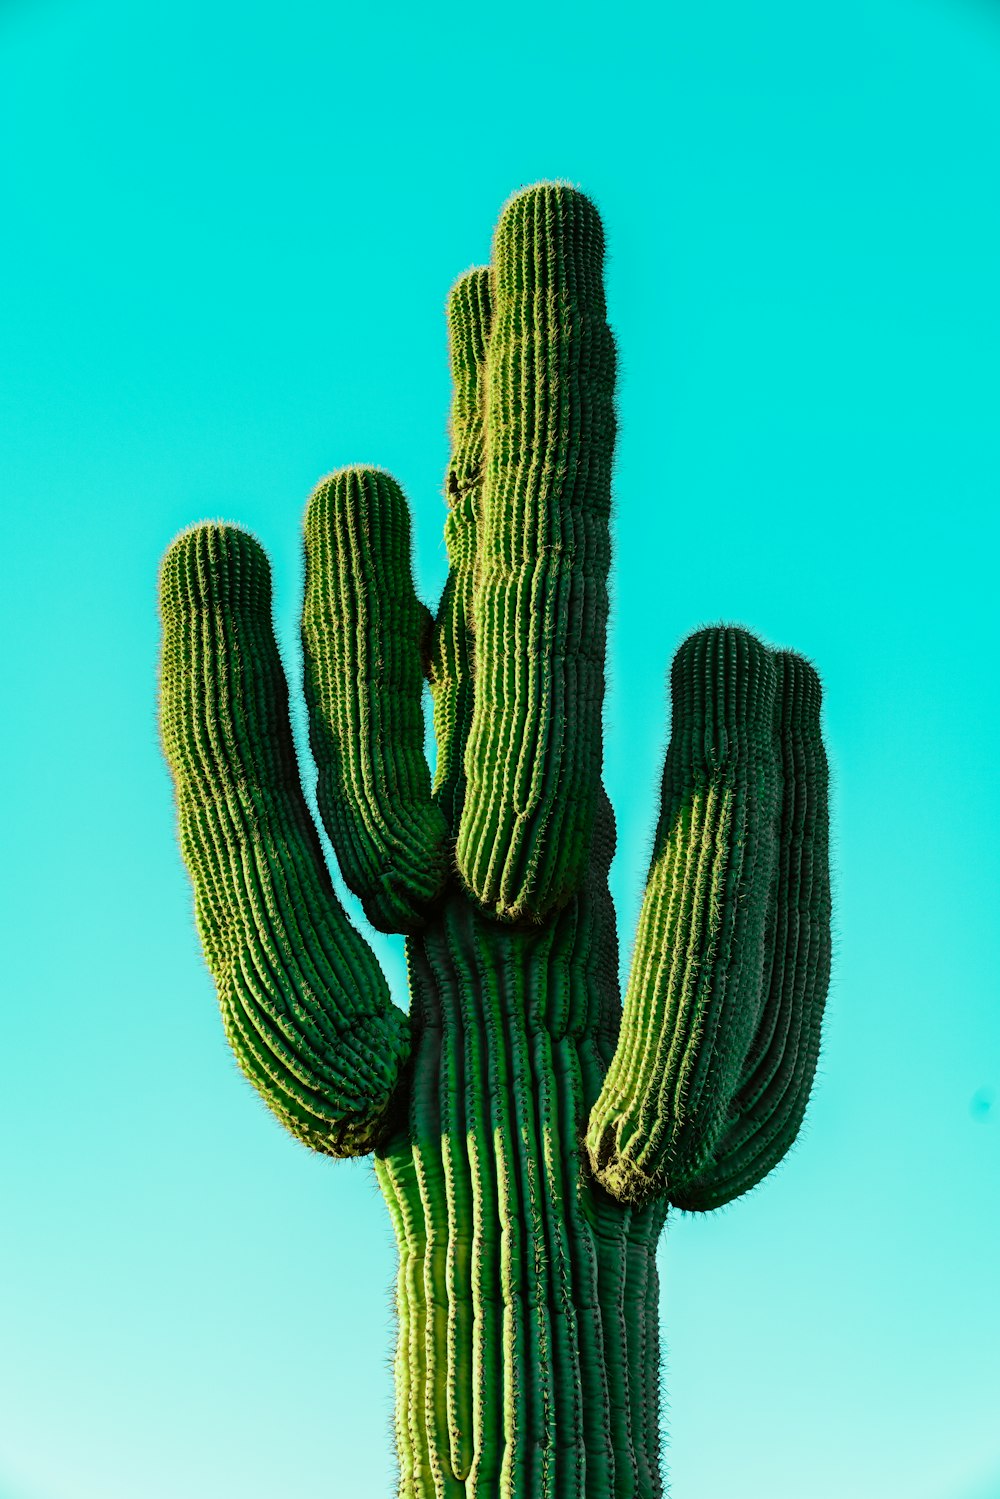 Más de 550 imágenes de cactus | Descargar imágenes gratis en Unsplash